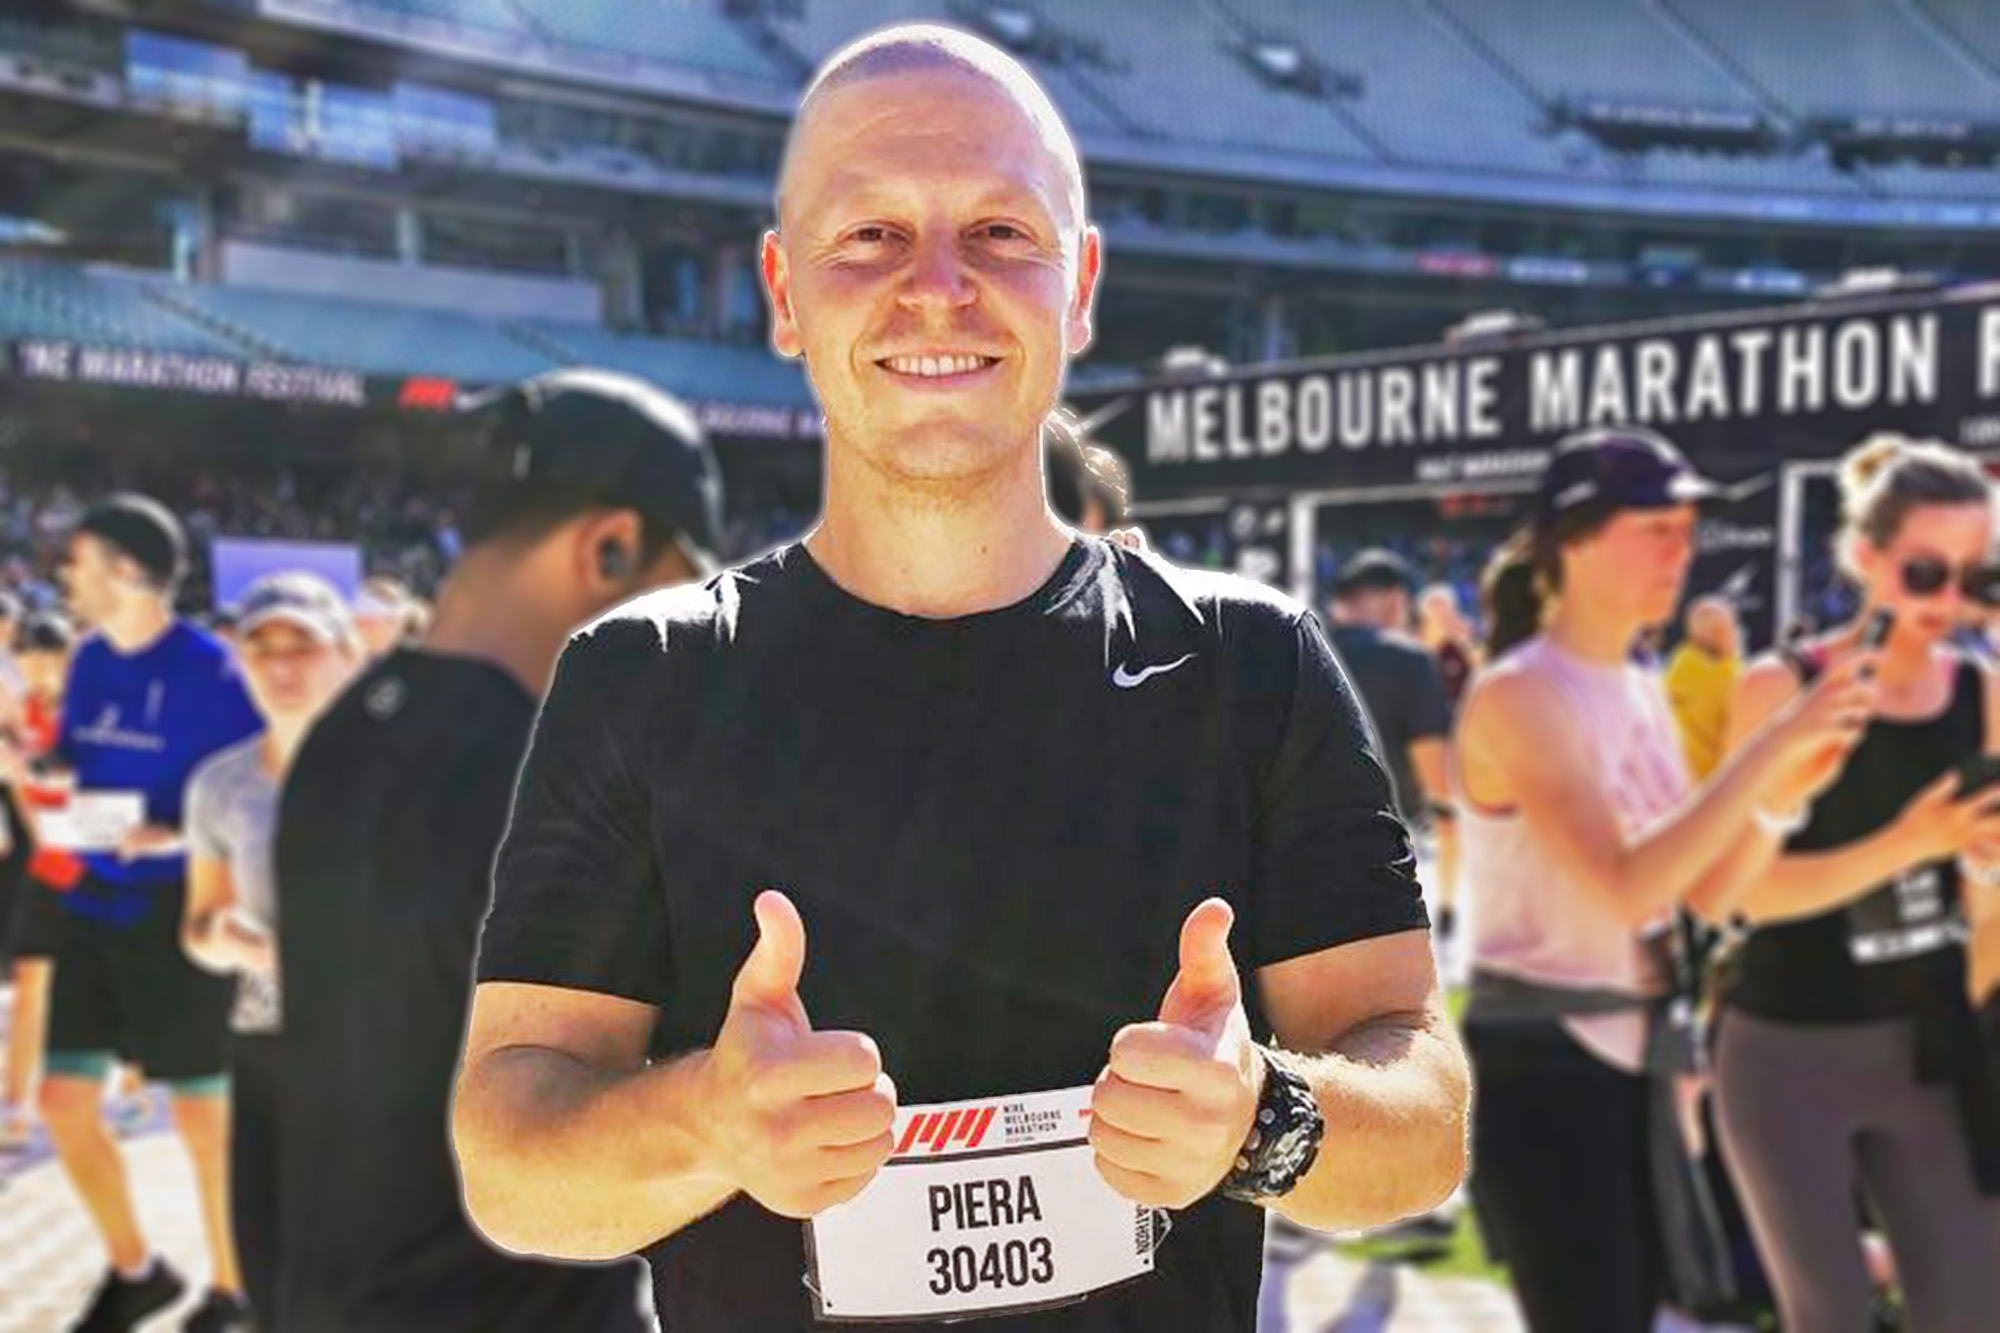 Fitness Trainer Trent Piera at the Melbourne Marathon